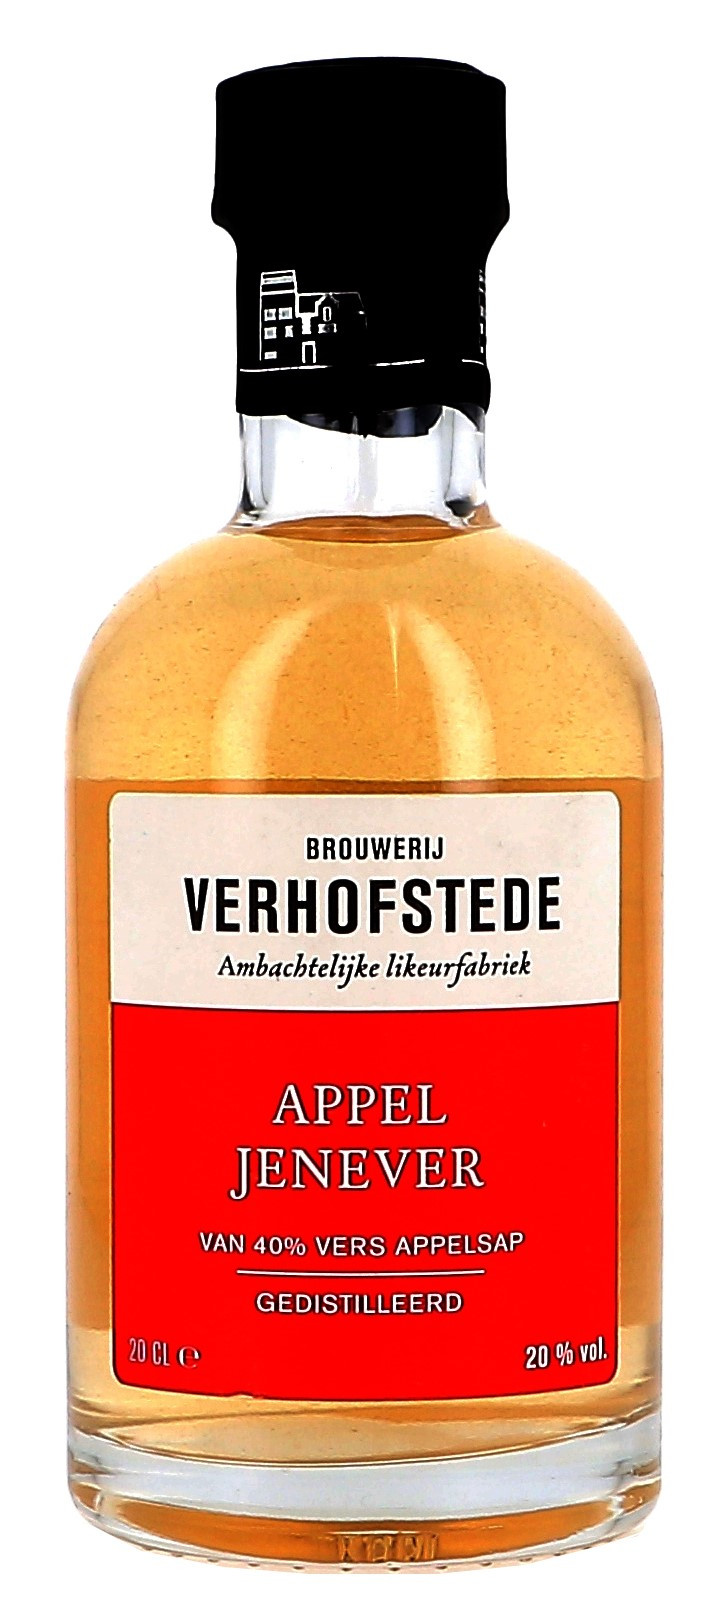 Appeljenever Brouwerij Verhofstede 70cl 20% (Jenever)